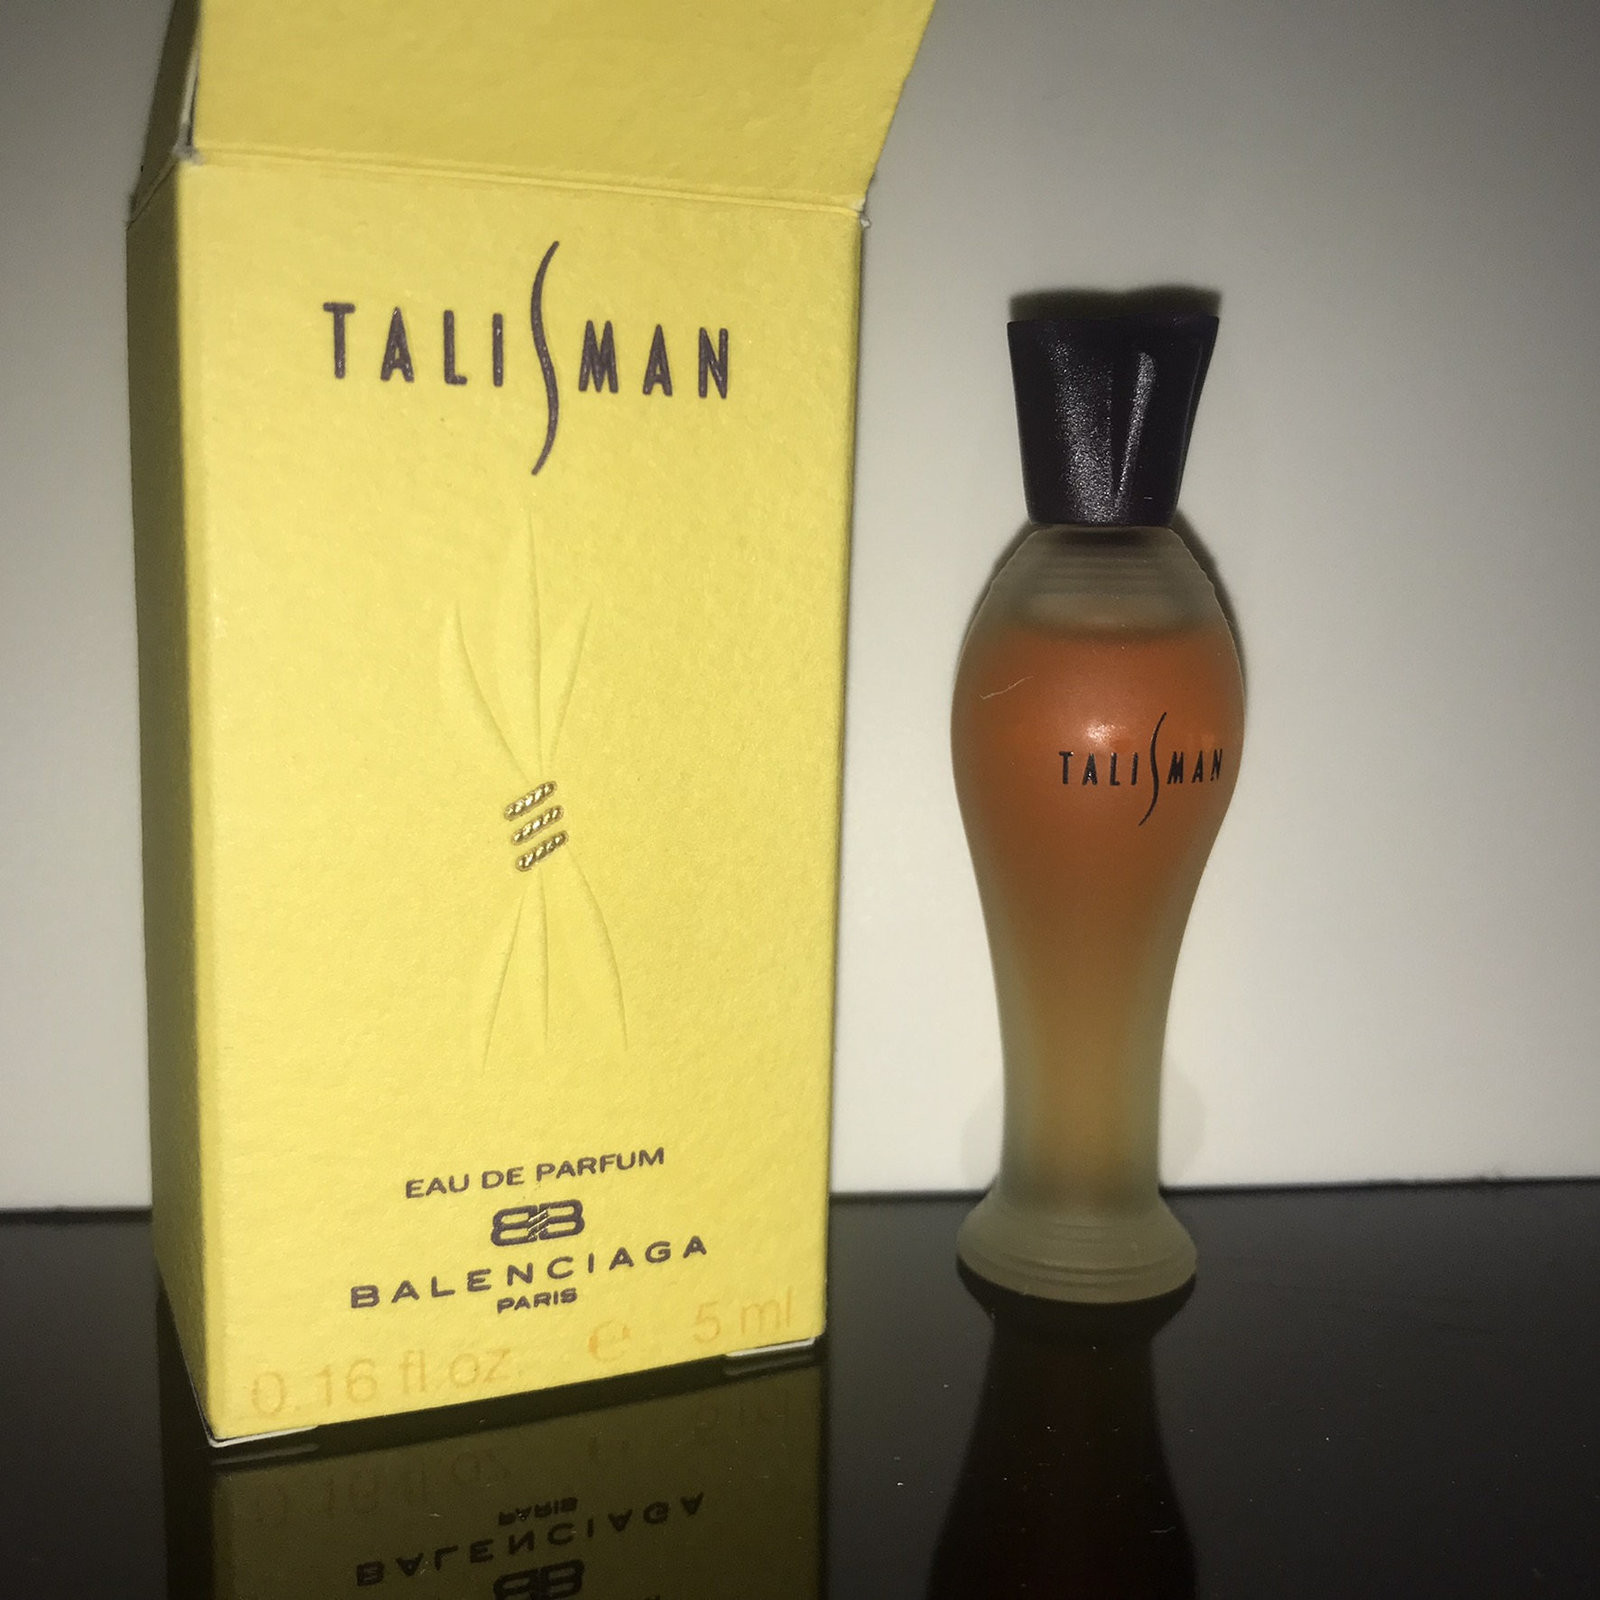 Balenciaga Talisman Eau de Parfum 5 ml  year: 1994  condition see photo - rar, v - $25.00